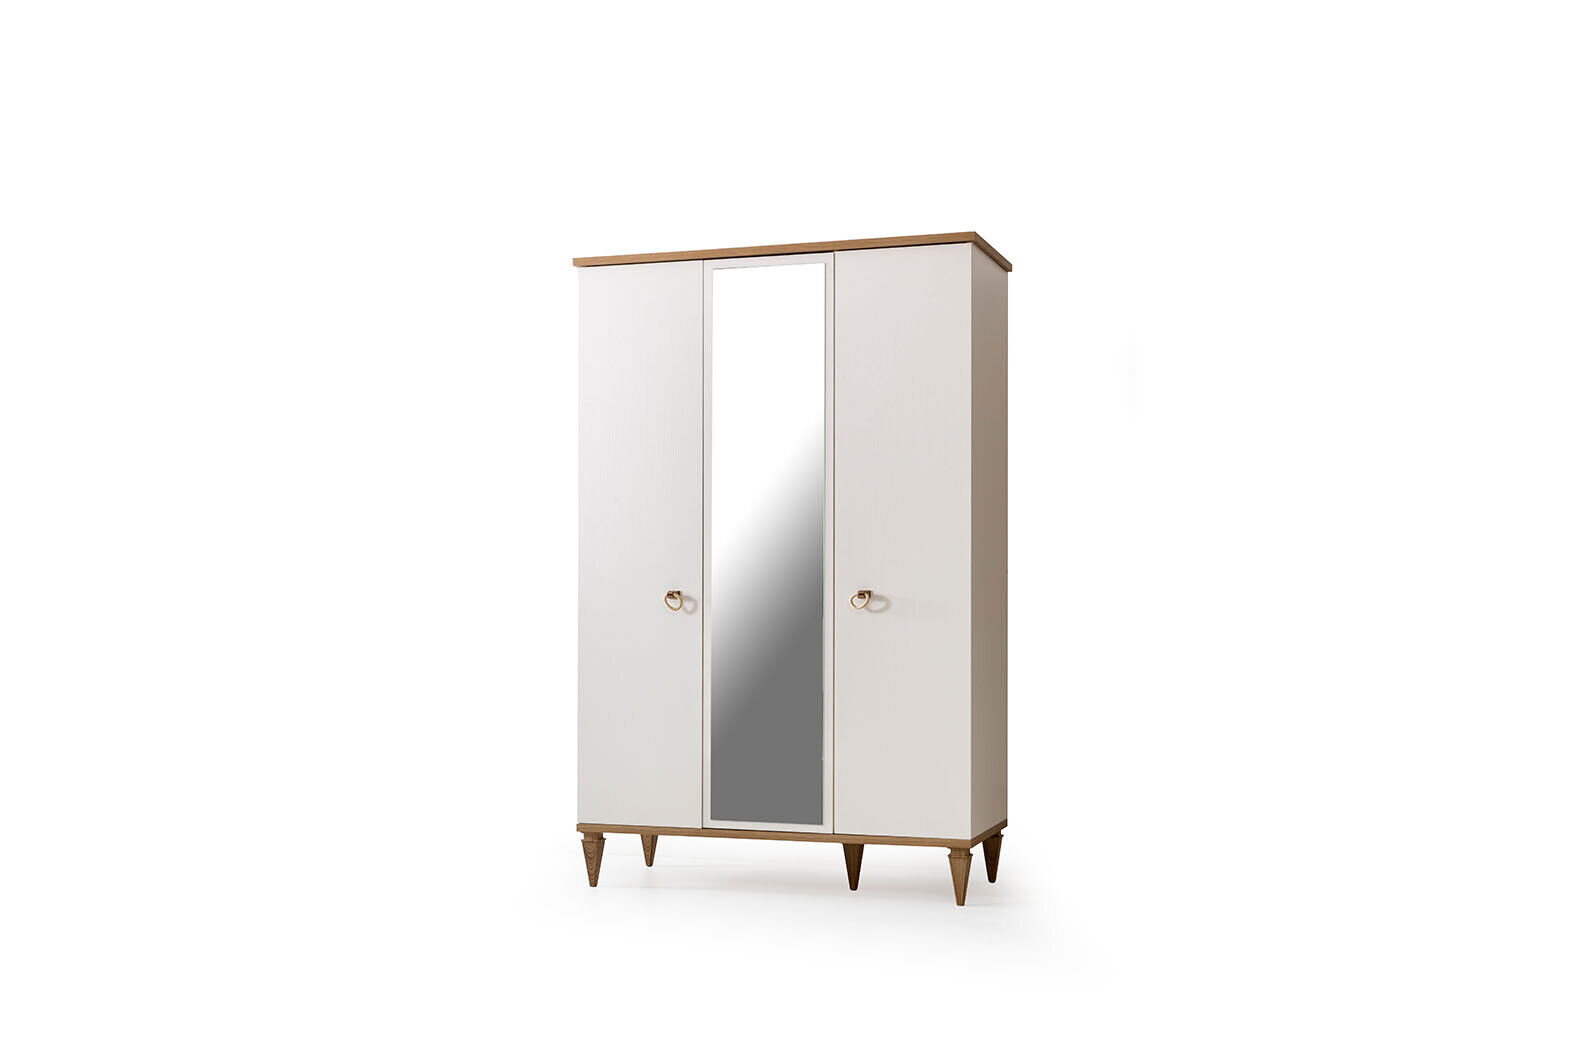 Luxurious white wardrobe Designer wooden wardrobe Glass wardrobe Furniture